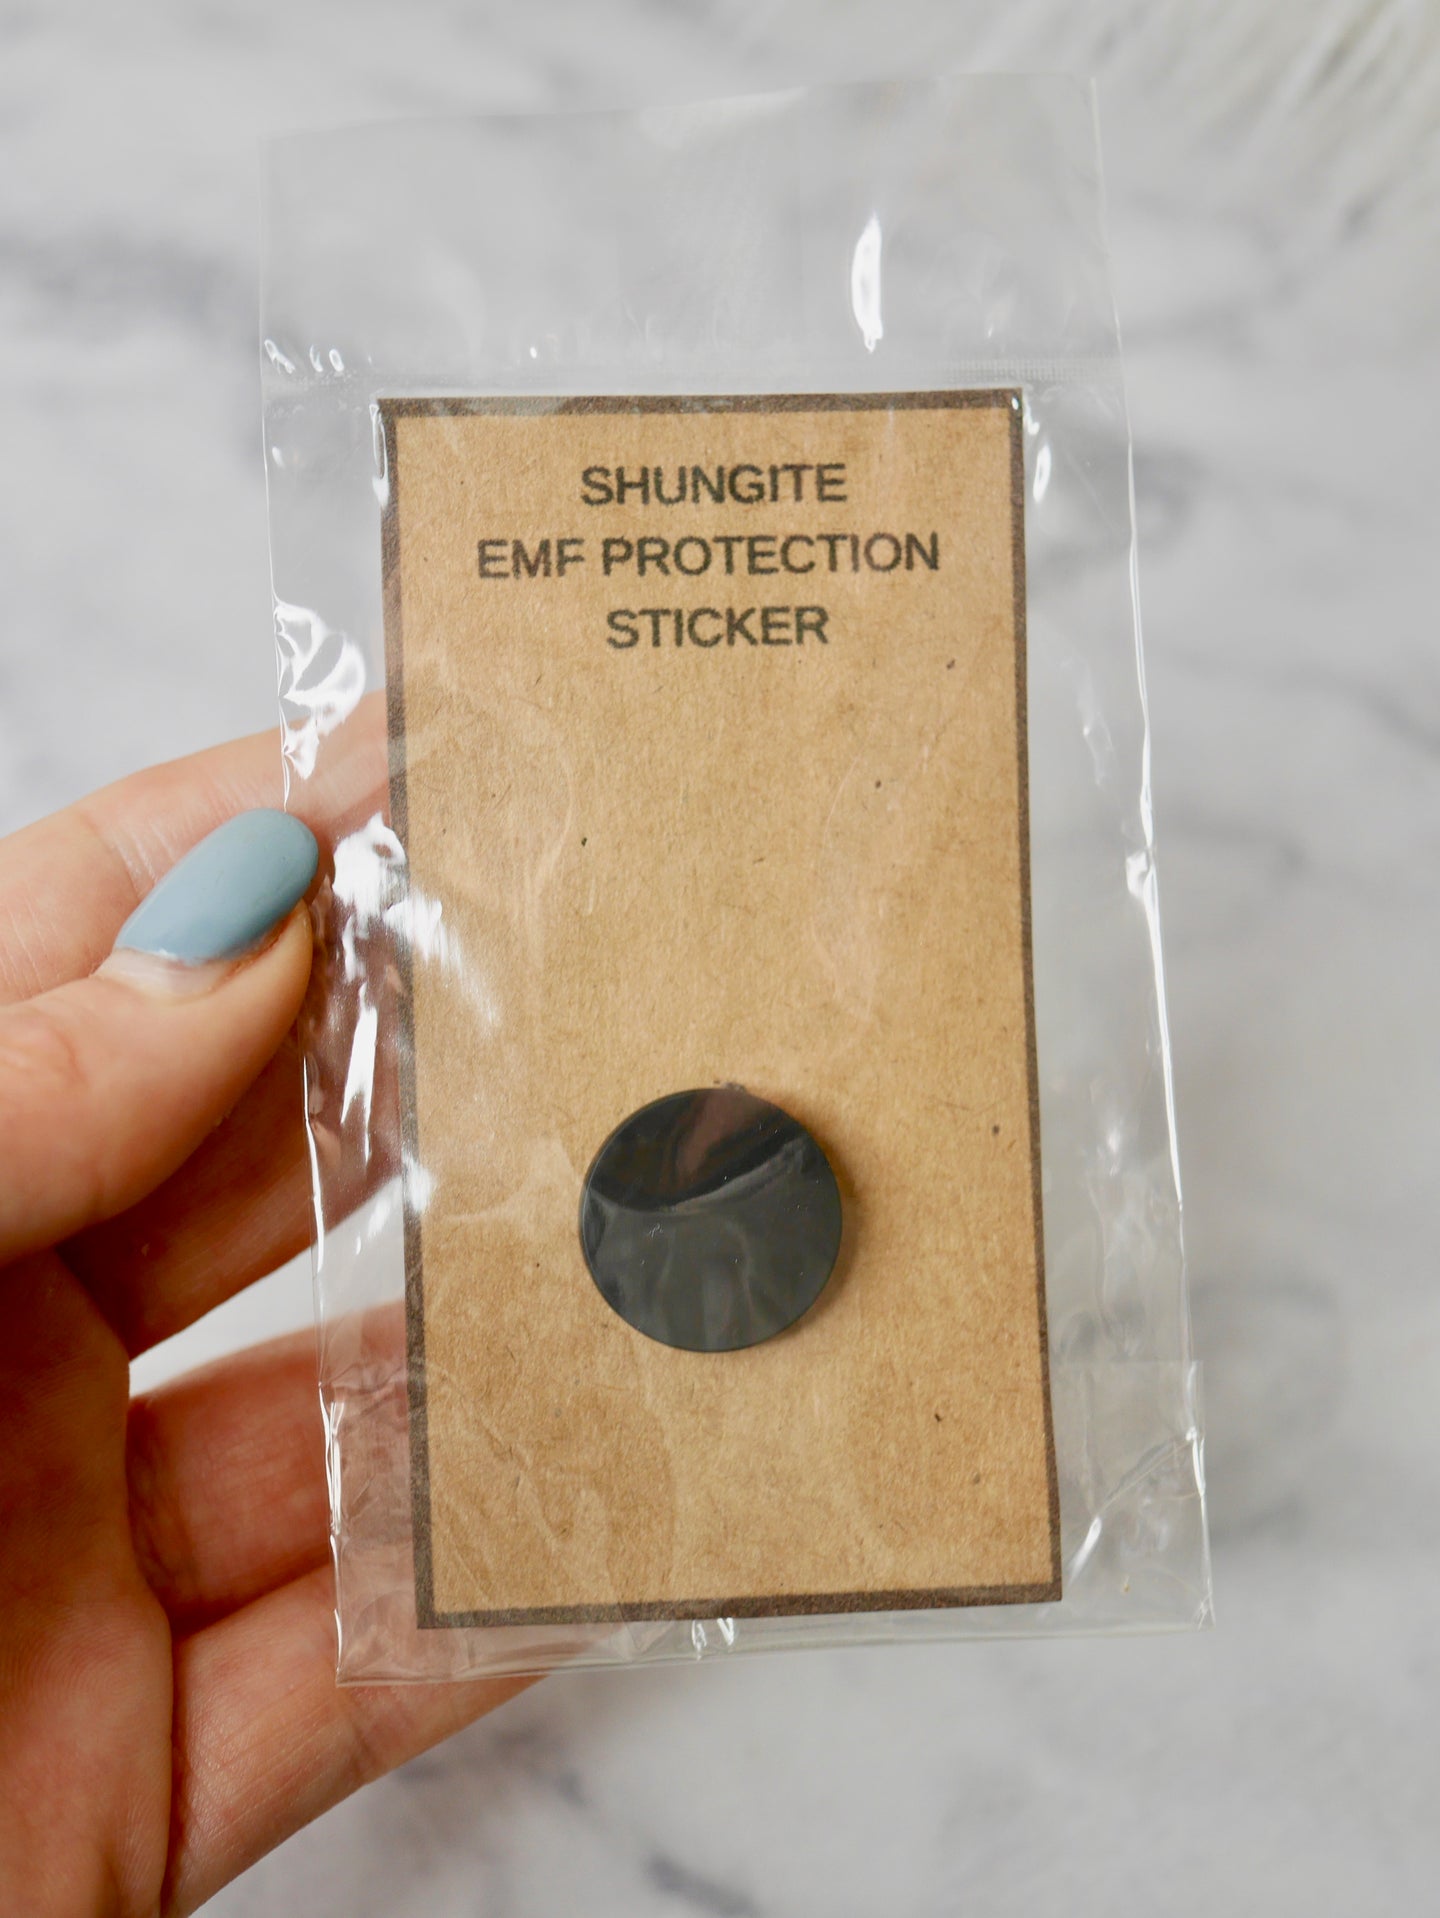 Shungite EMF sticker